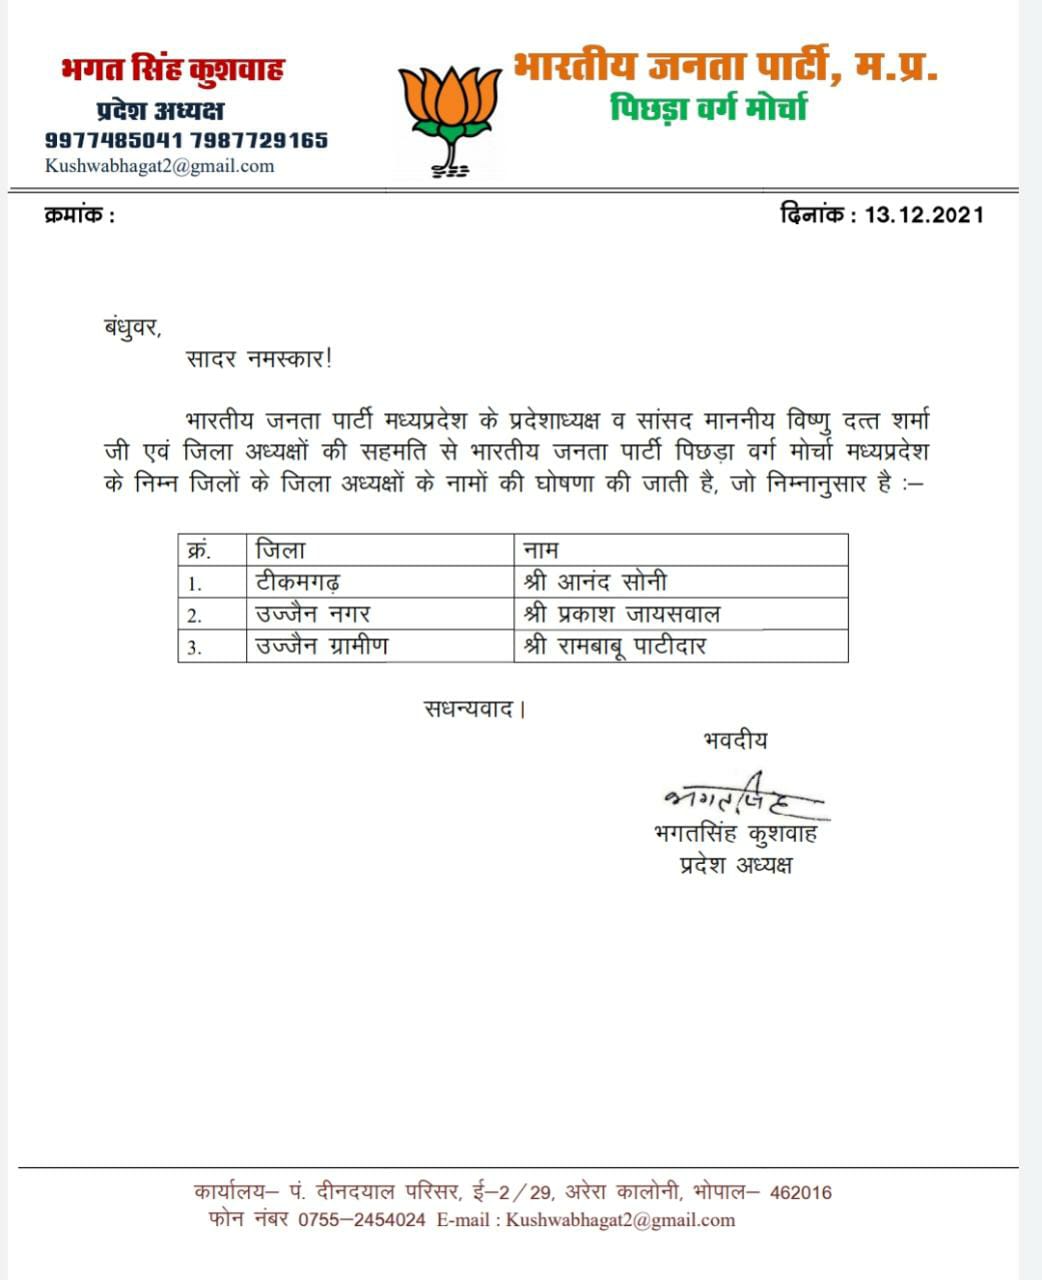 BJP पिछड़ा वर्ग मोर्चा के जिलाध्यक्षों के नामों की घोषणा, देखिए लिस्ट